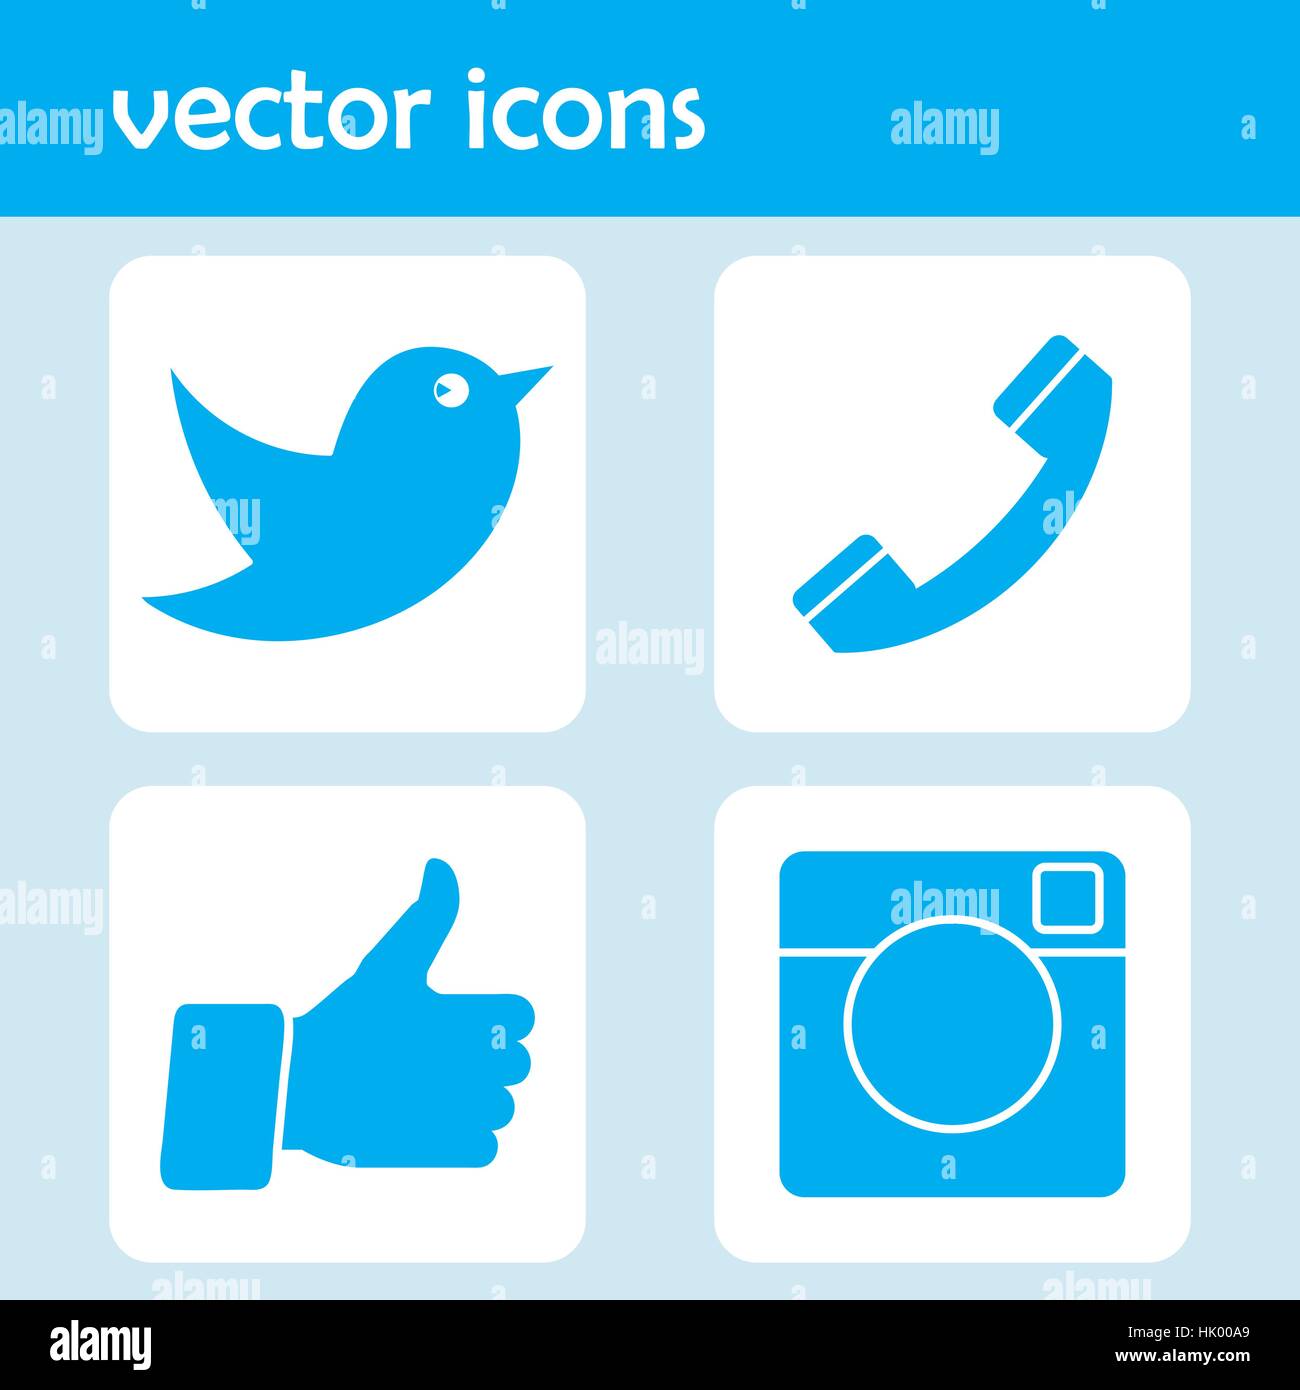 Flache gestaltete Vektor-Icons wie Hand-Symbol, Daumen nach oben, Digitalkamera, Messenger Vogel und Telefonhörer für soziale Medien, Websites, Schnittstellen. Stock Vektor